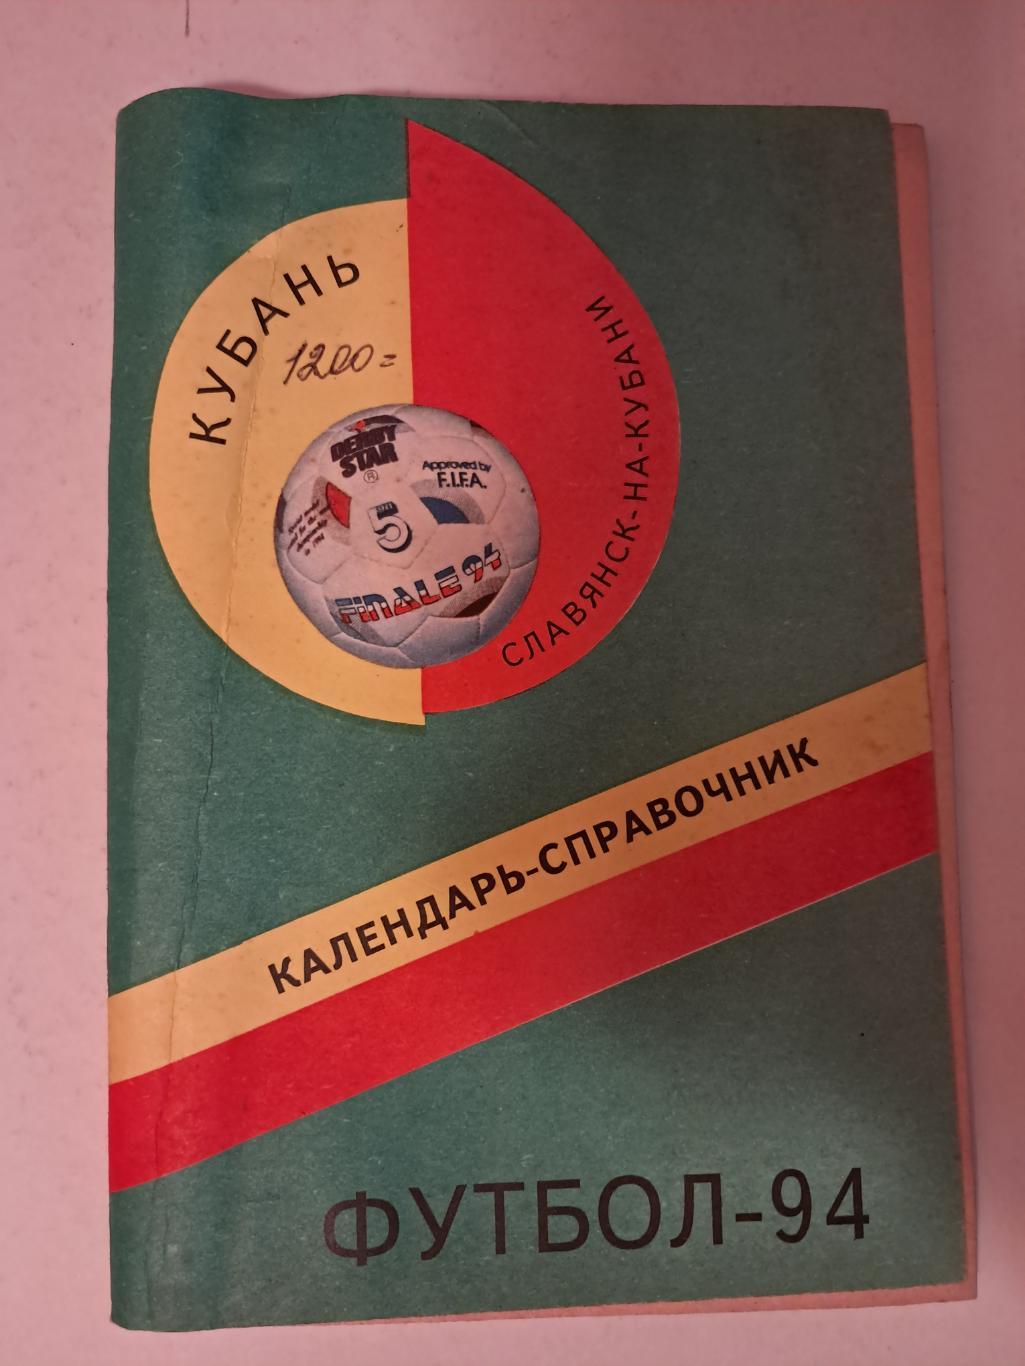 Календарь-справочник по футболу 1994 Славянск-на-Кубани